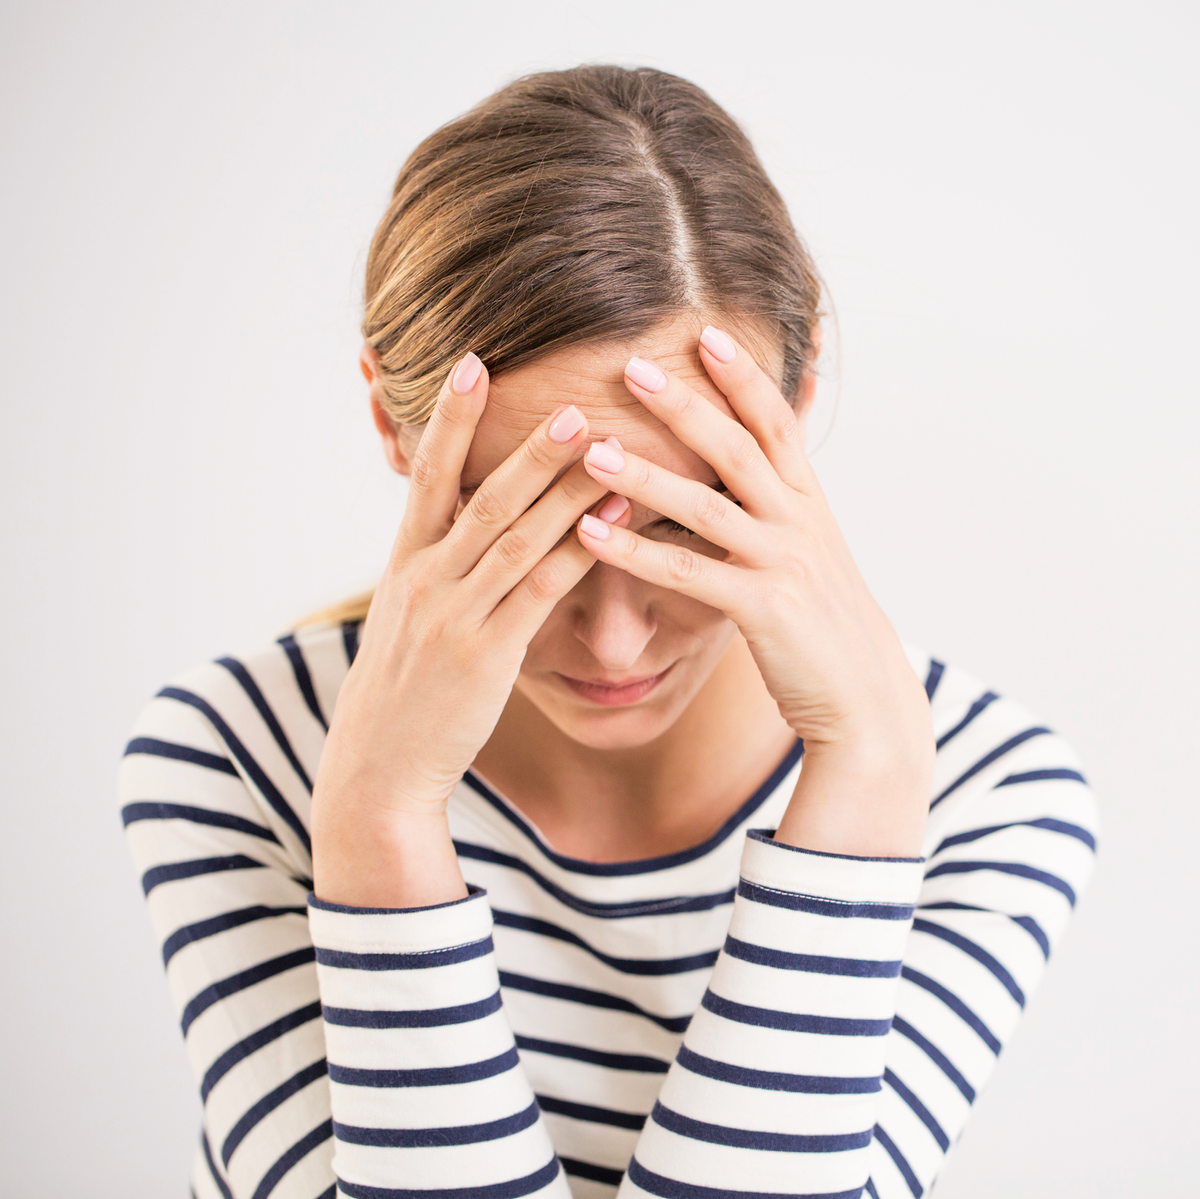 How to Get Rid of a Tension Headache - Tension Headache Relief